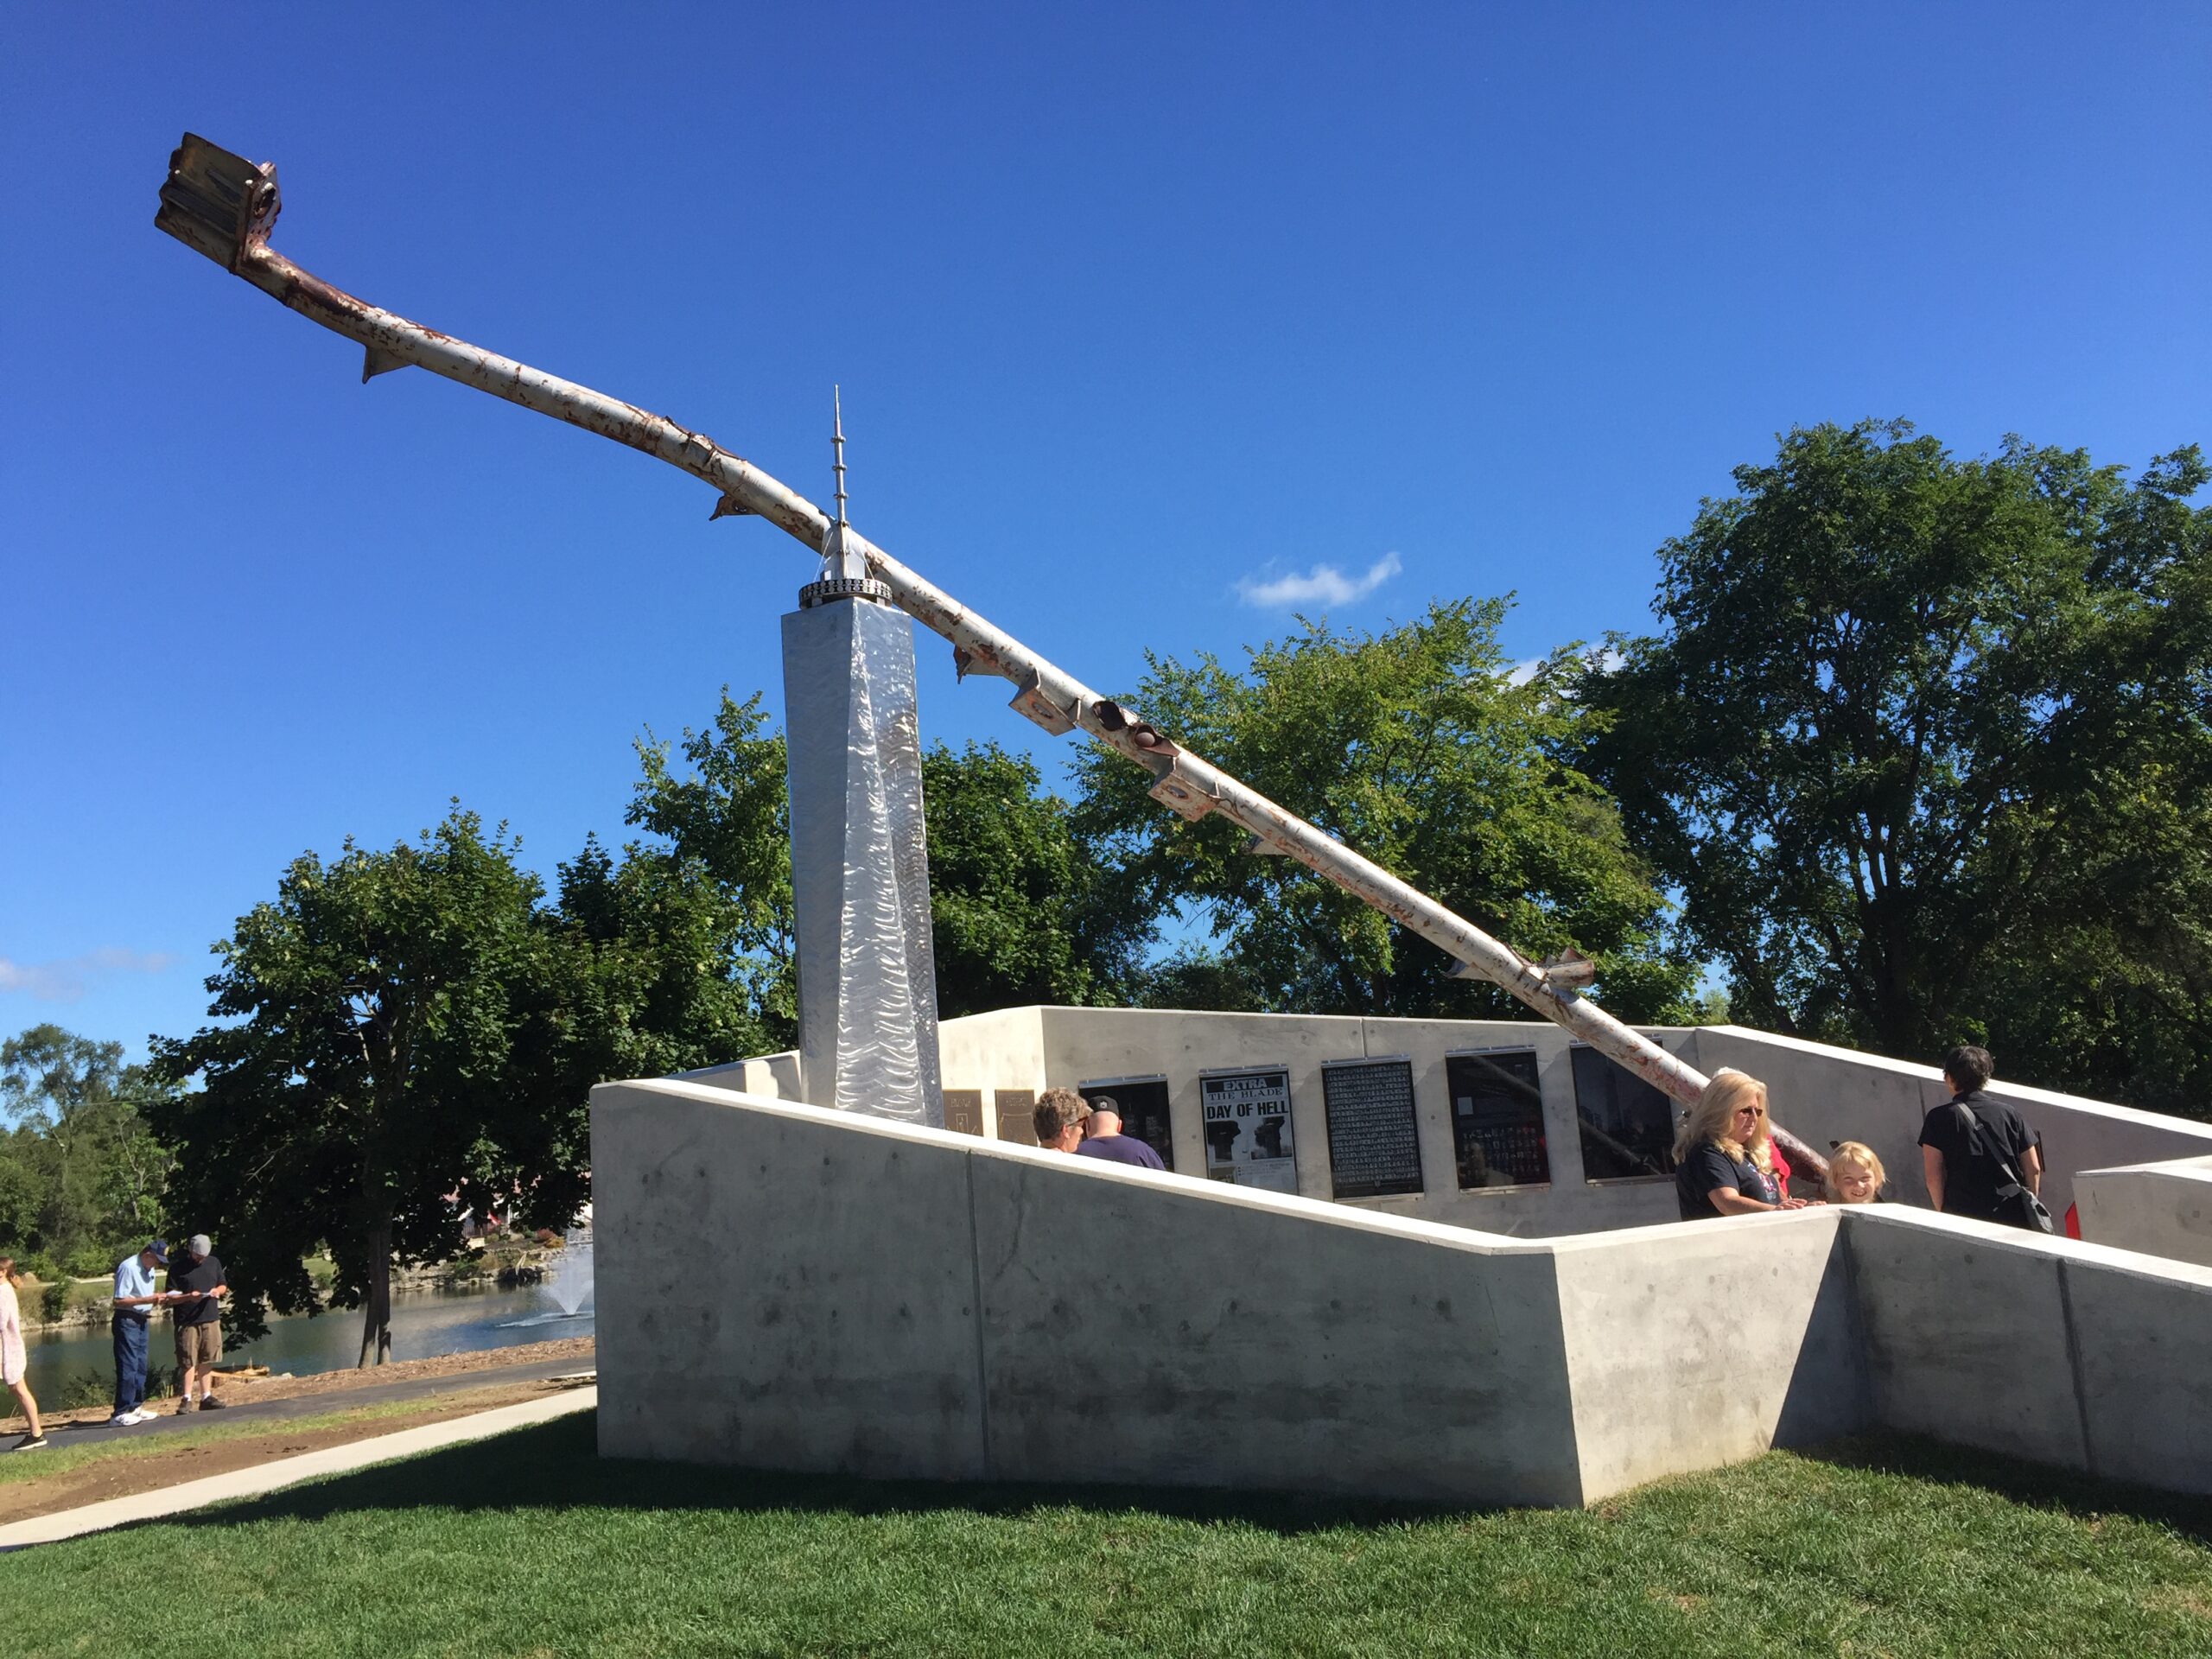 September 11th Memorial Unveiled in Gibsonburg